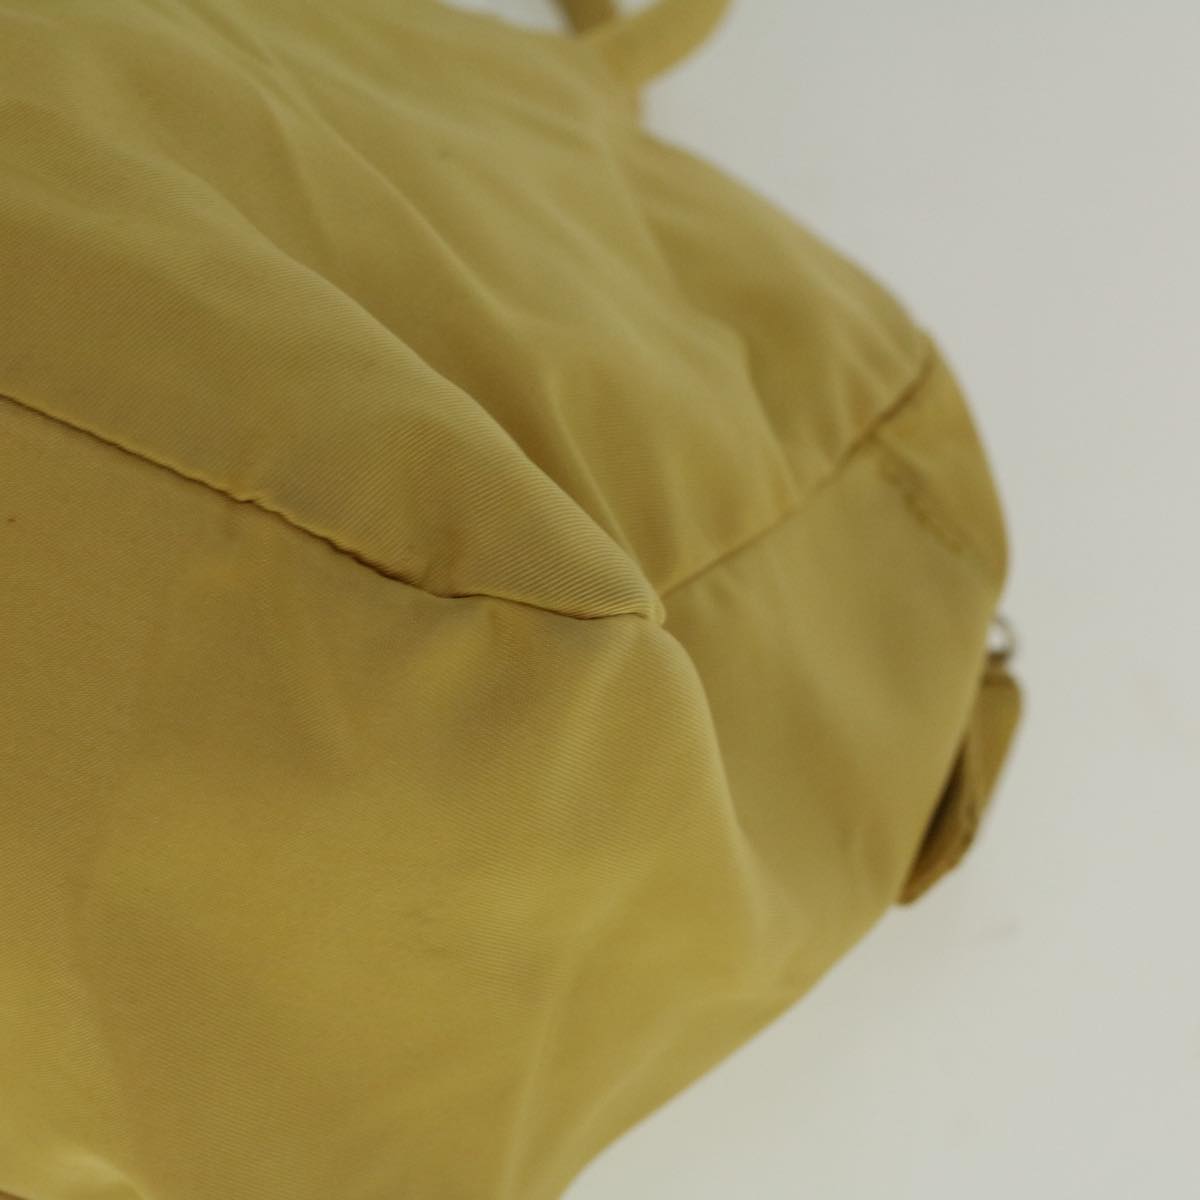 PRADA Hand Bag Nylon Yellow Auth 60250